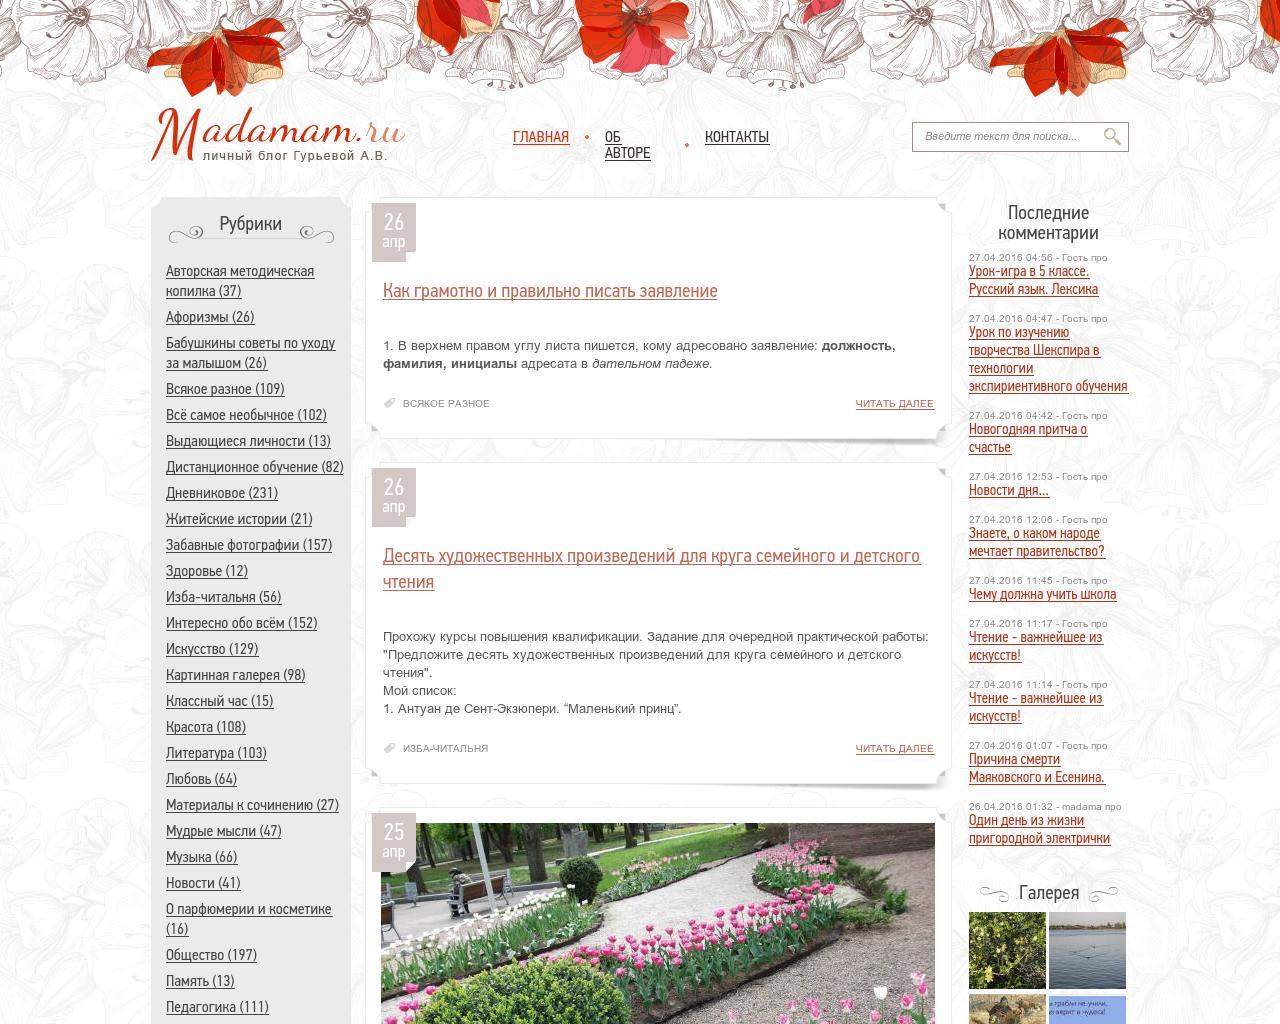 Изображение сайта madamam.ru в разрешении 1280x1024